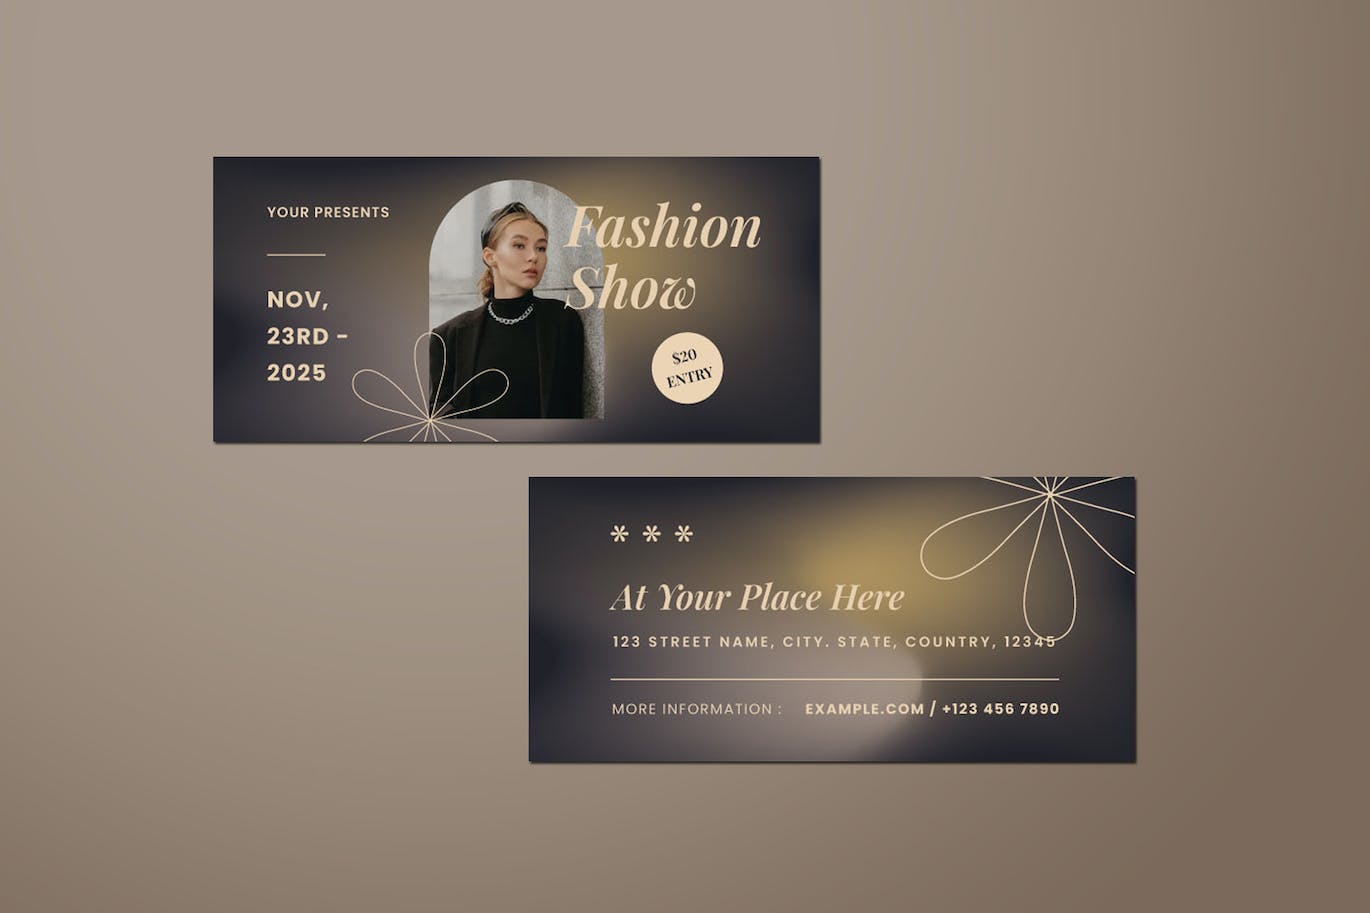 时装秀DL传单设计模板 Fashion Show DL Flyer 设计素材 第4张